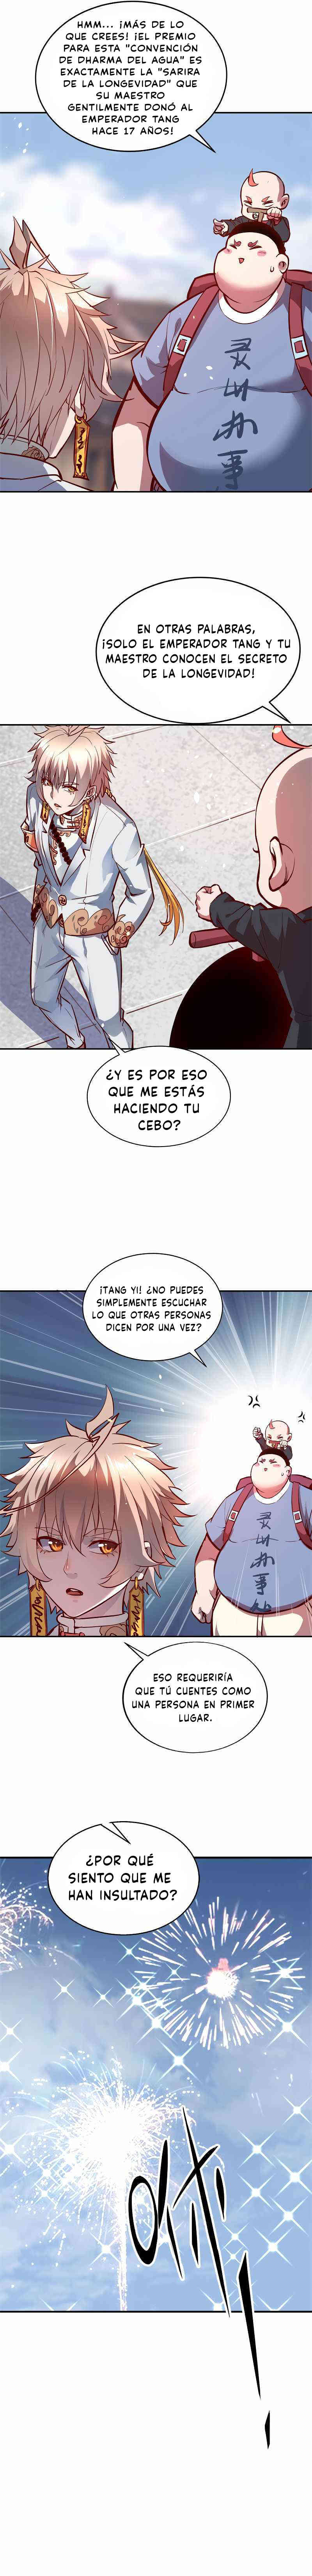 Manga Yo, Desafío a mi Ascensión Chapter 2 image number 5